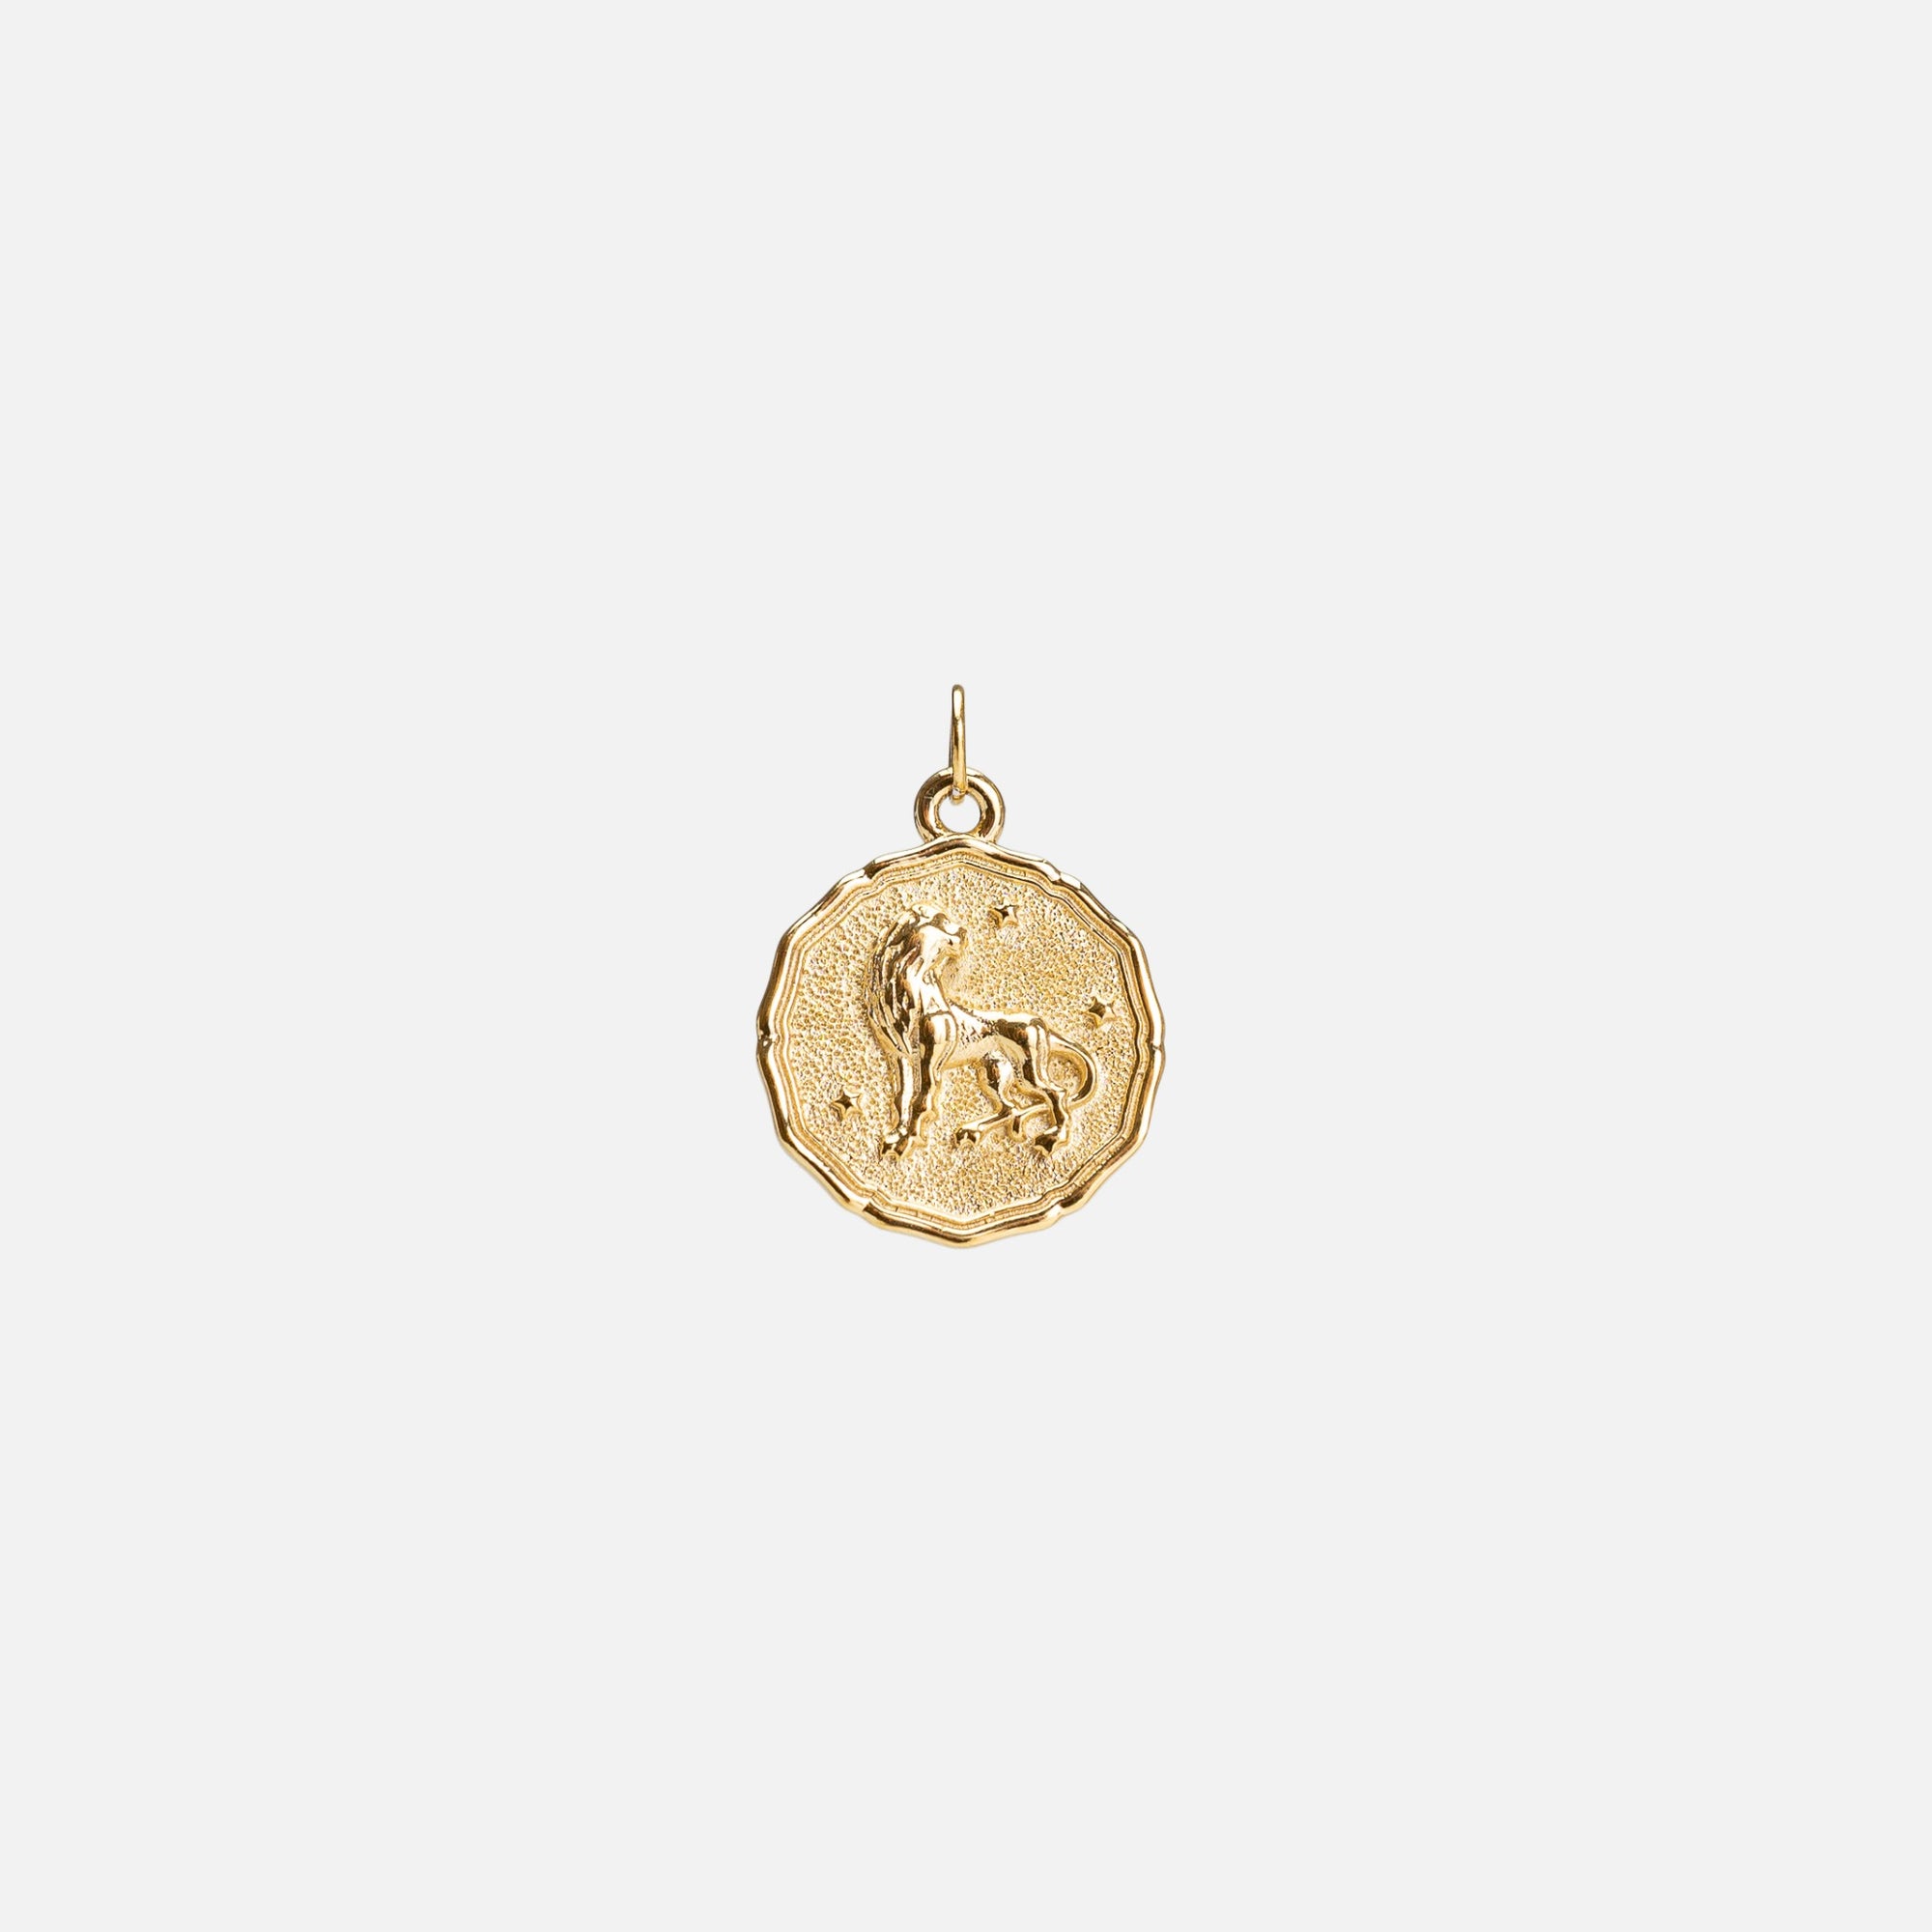 Golden "leo" zodiac sign charm